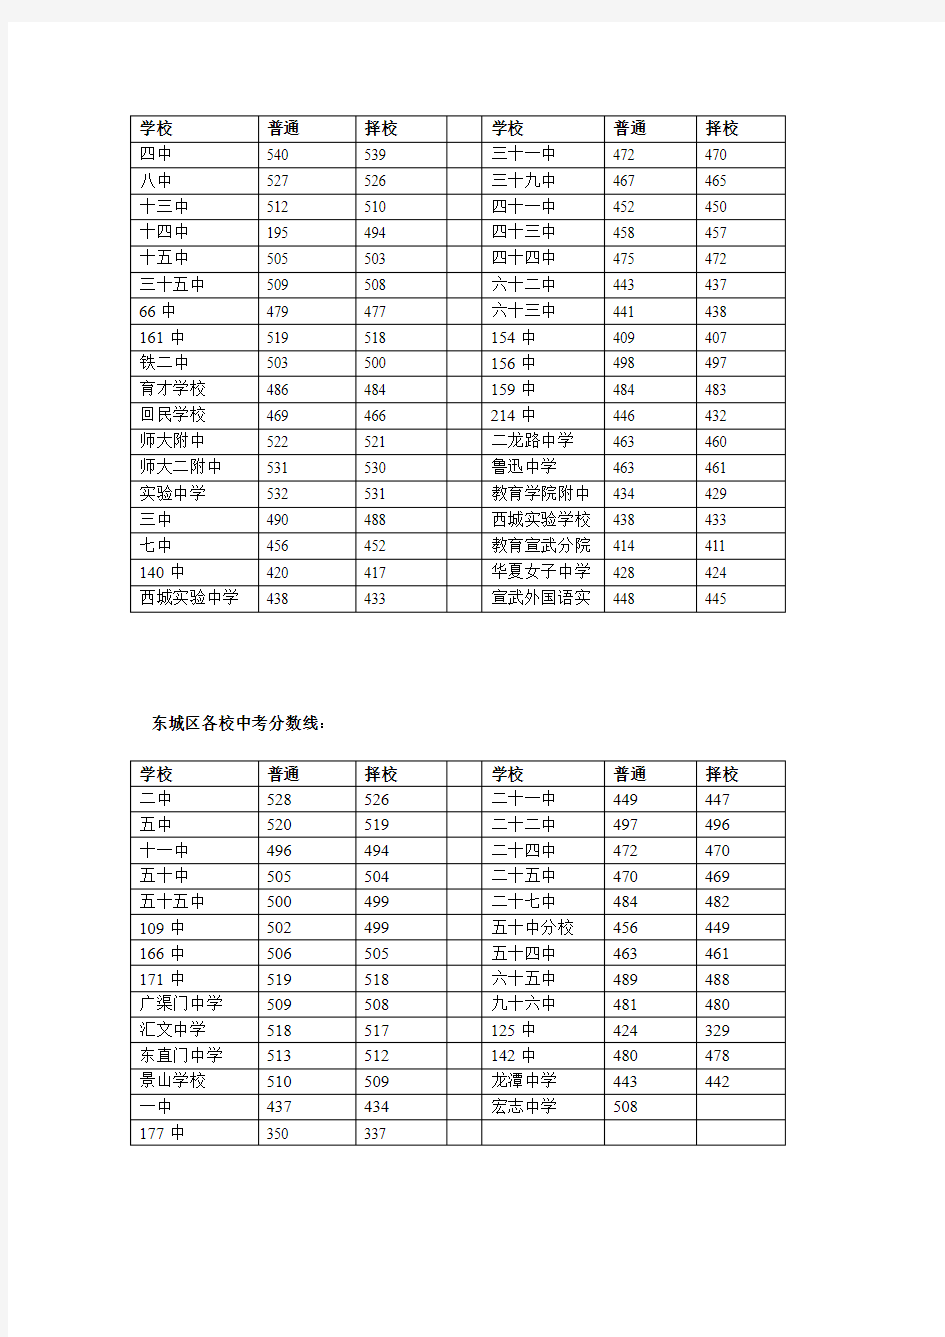 2013年北京各城区中考录取分数线